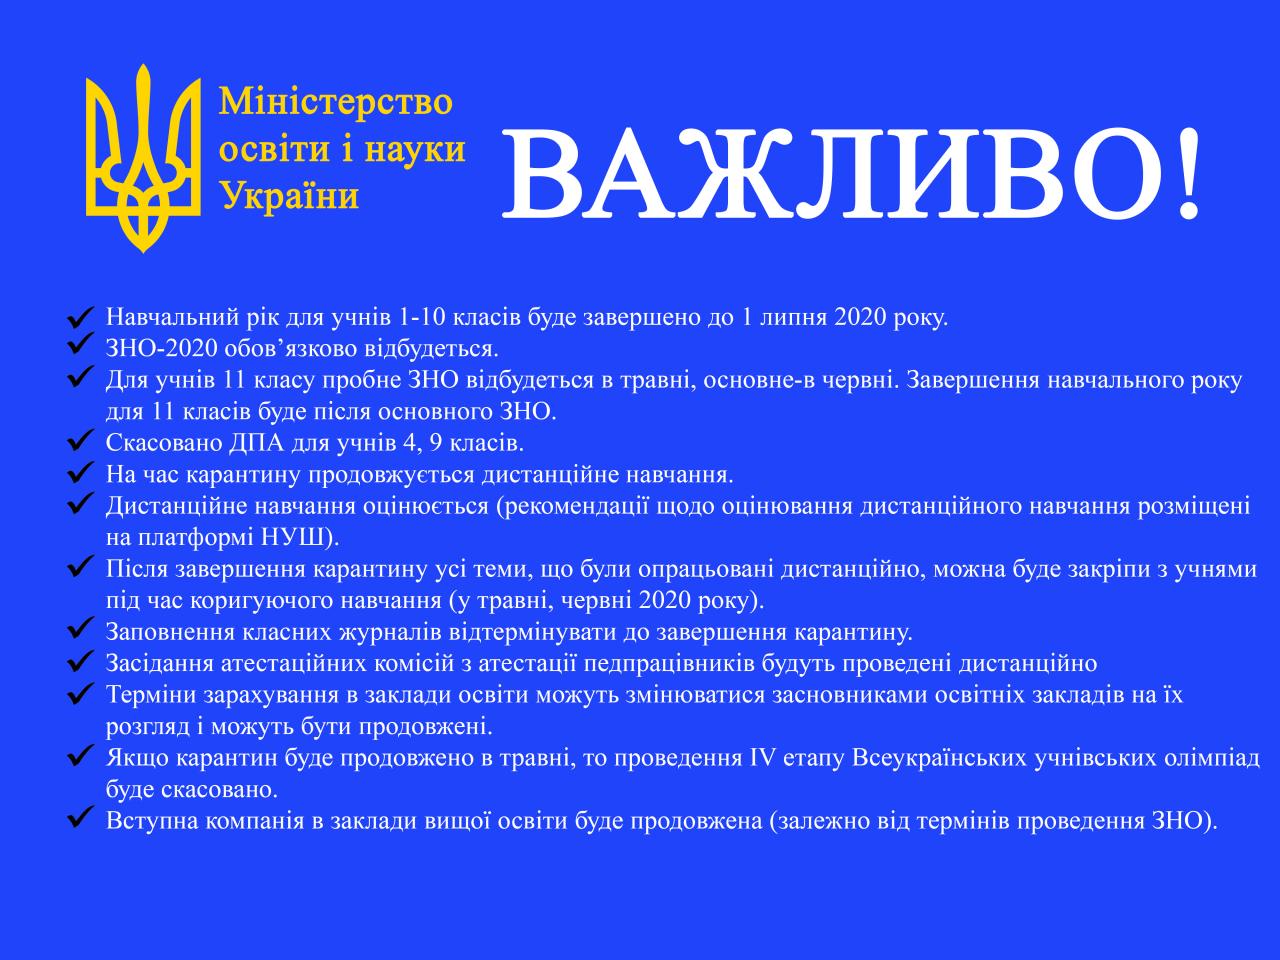 http://dunrada.gov.ua/uploadfile/archive_news/2020/03/26/2020-03-26_4058/images/images-13737.jpg